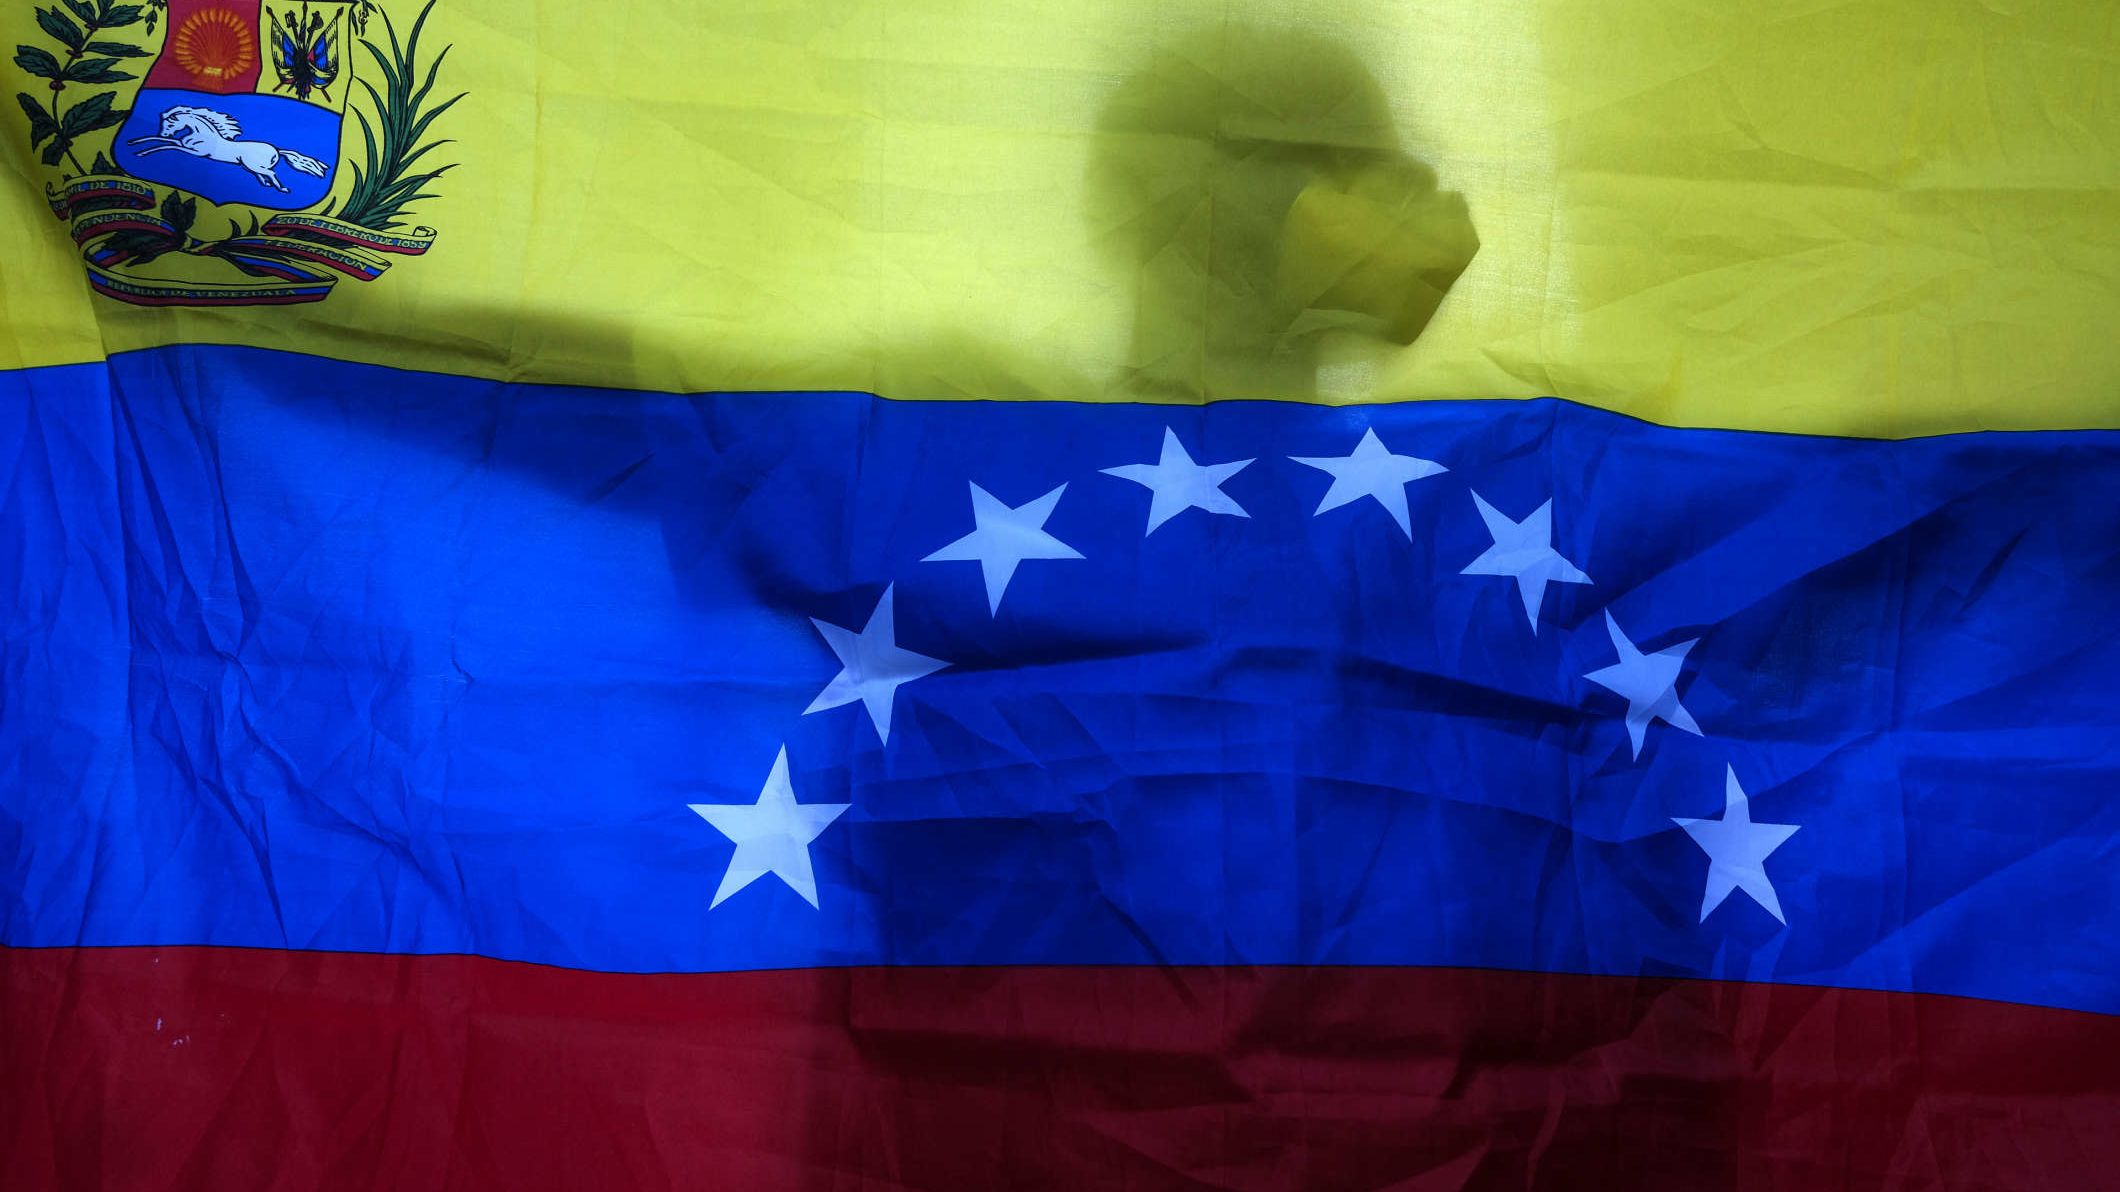 La supervisión de las elecciones ahora recae en los expresidentes que sí pudieron entrar a Venezuela, dice experto